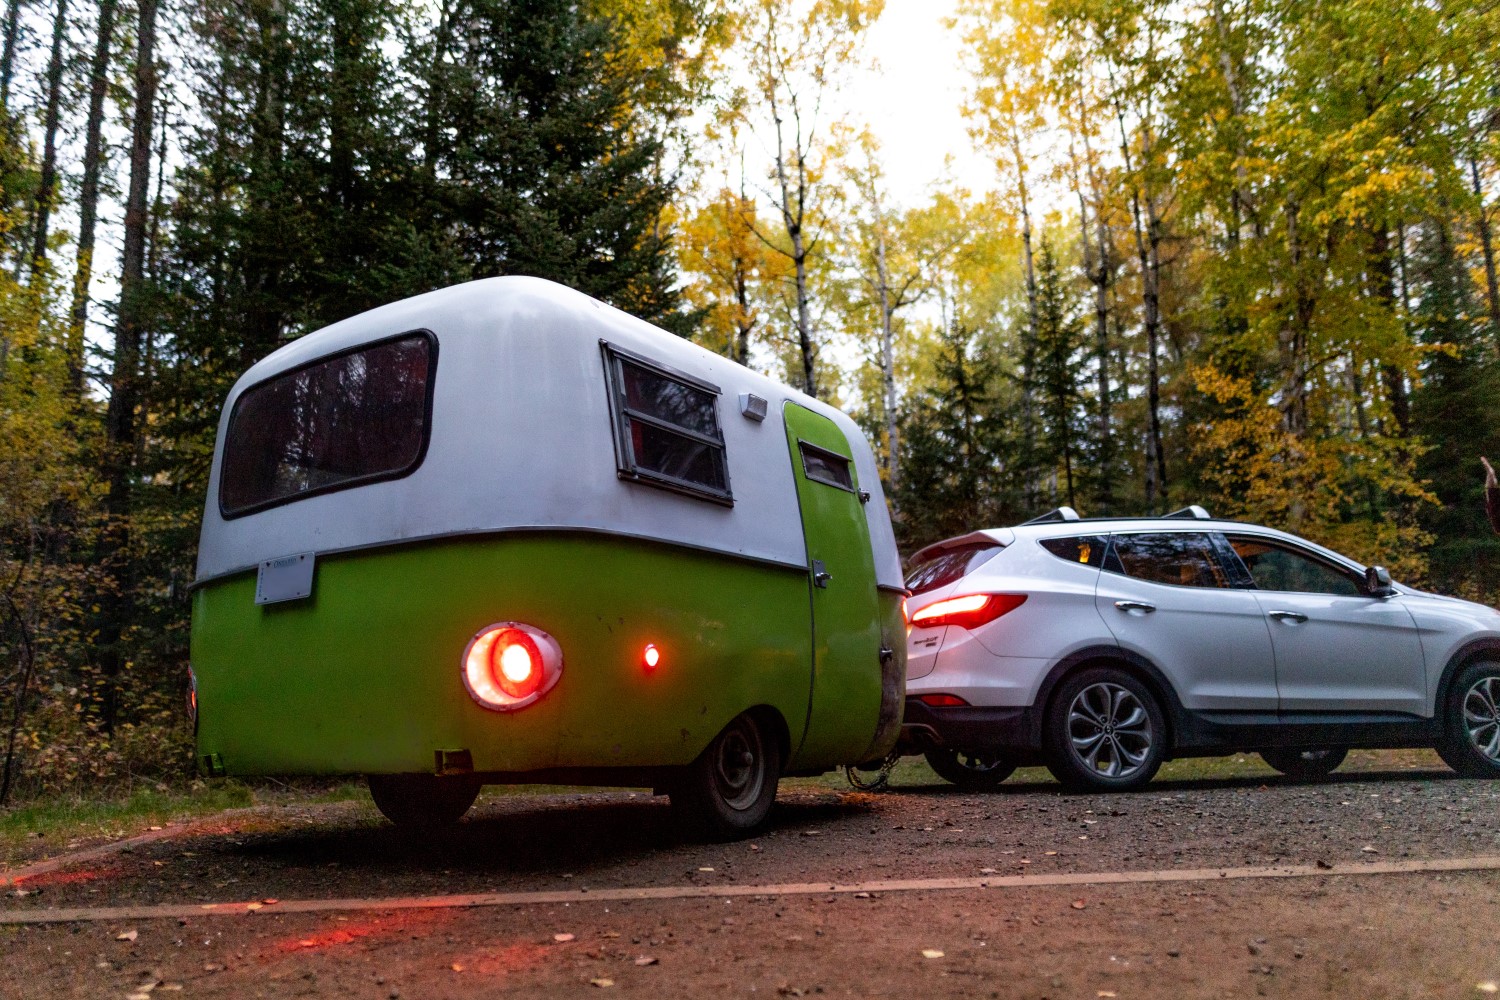 Une petite roulotte verte et blanche attachée à un VUS argenté sur le stationnement d'un terrain de camping.